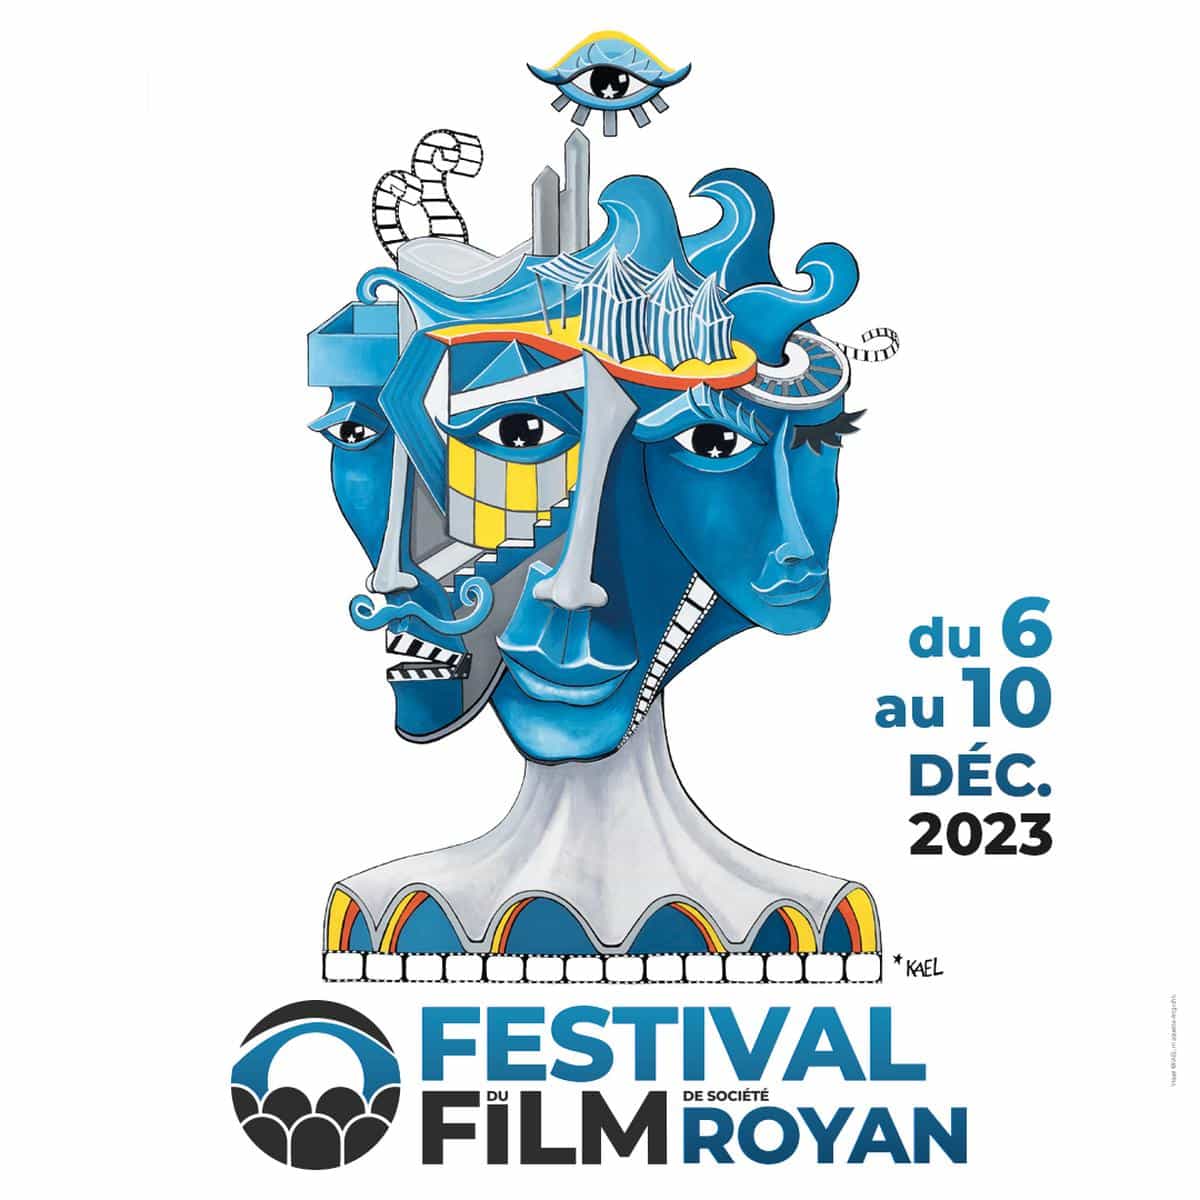 L’affiche du Festival du film de société de Royan dévoilée